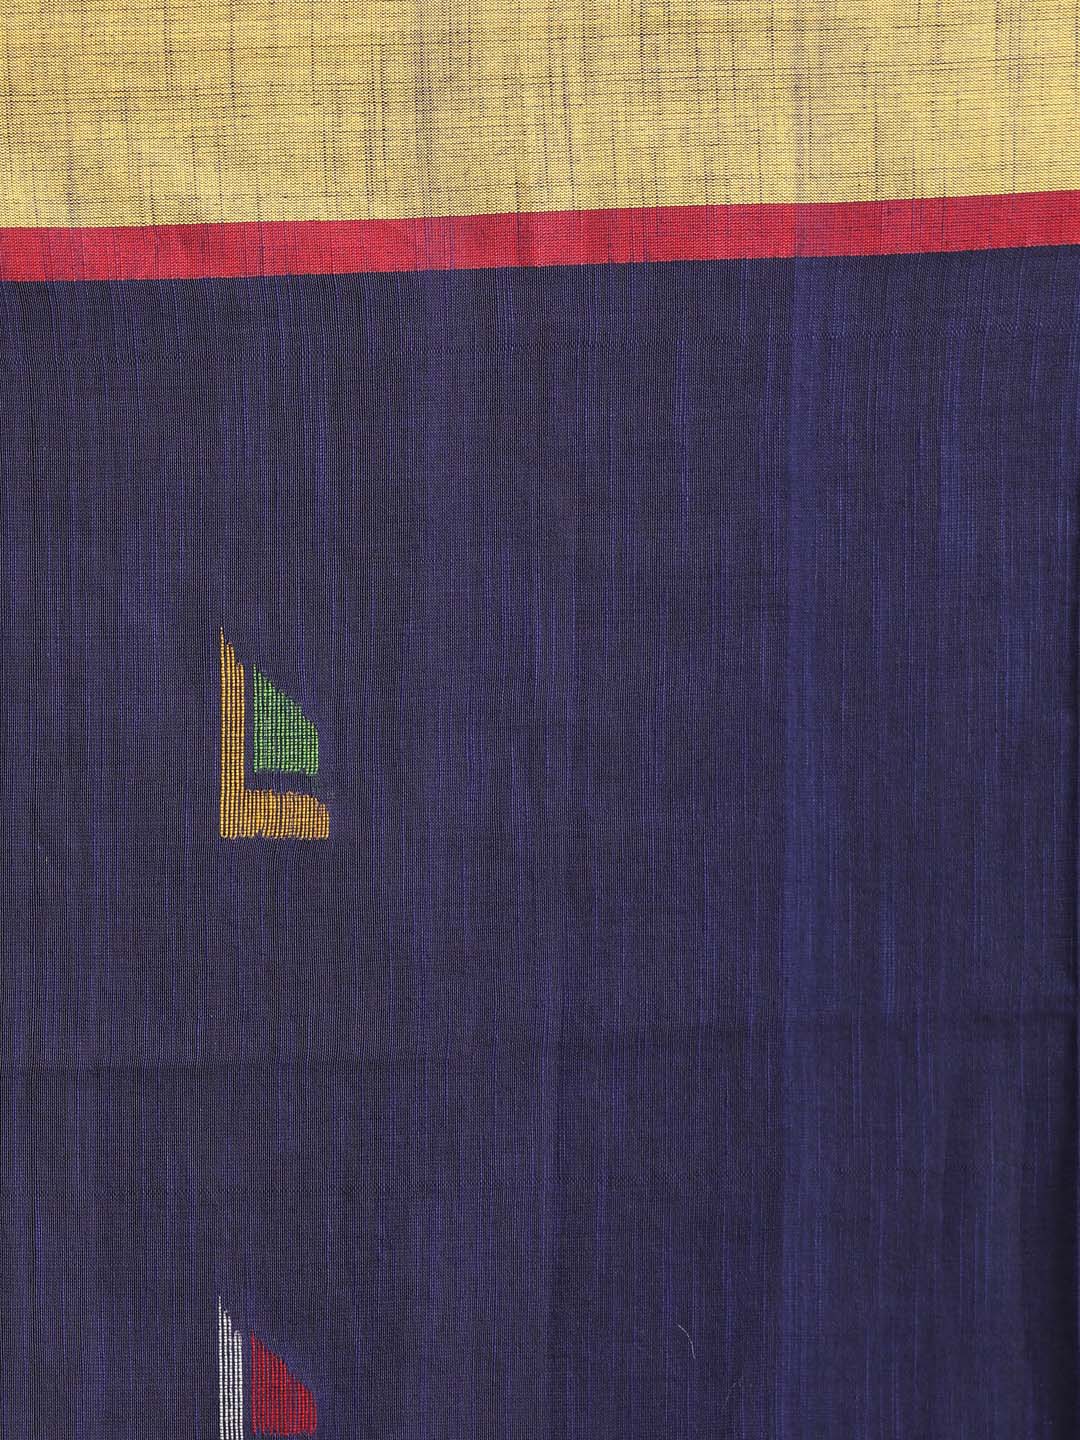 Indethnic Blue Bengal Handloom Pure Cotton Saree Work Saree - Saree Detail View